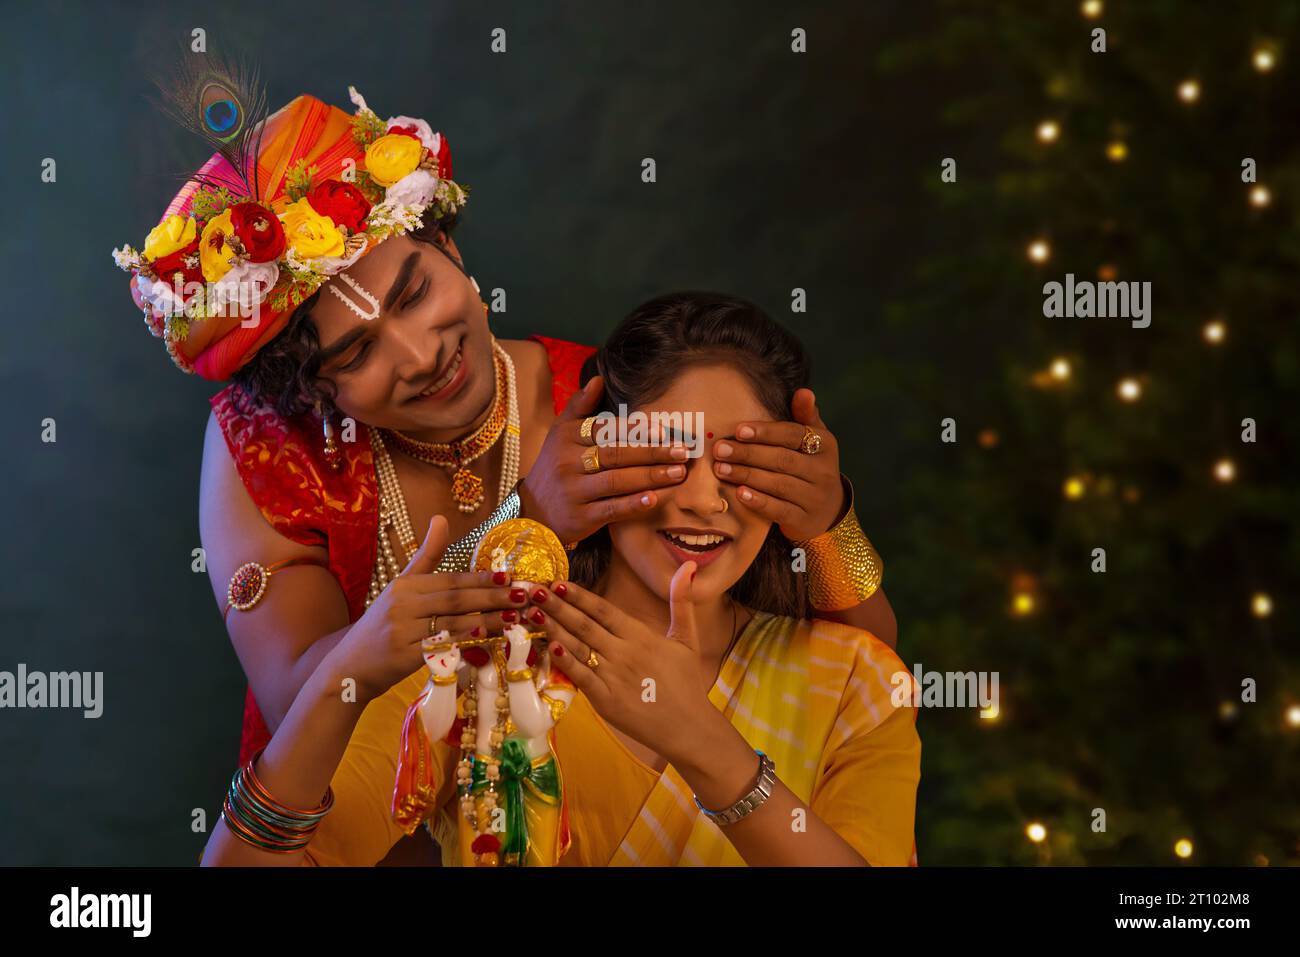 Junger Mann verkleidet als Lord Krishna und bedeckt die Augen der Frau anlässlich von Janmashtami Stockfoto